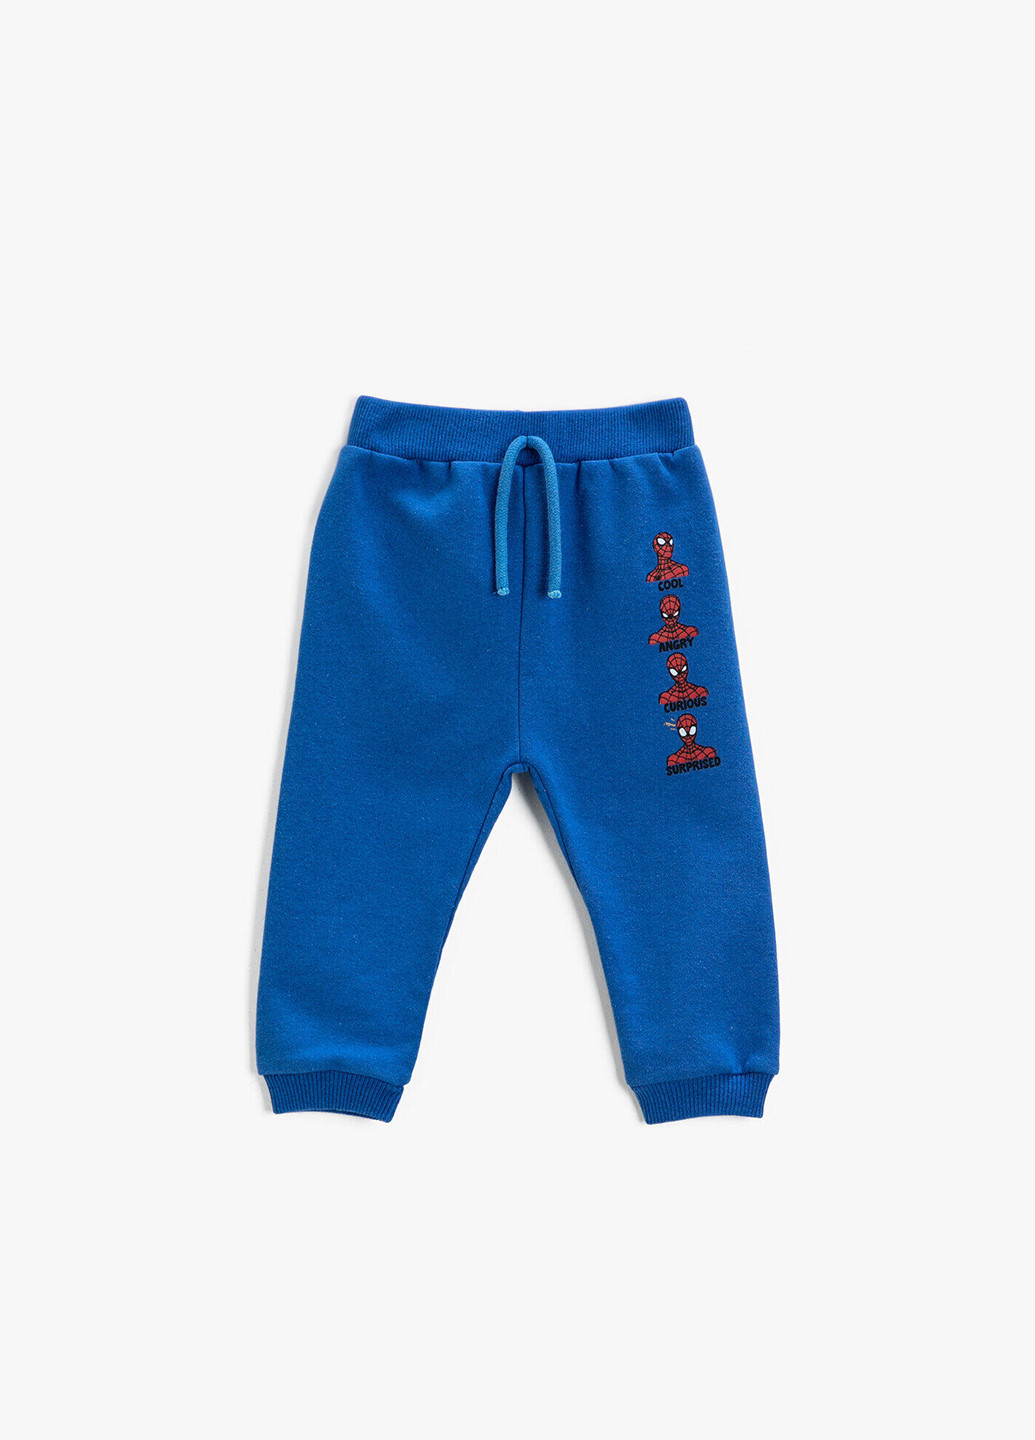 Синие спортивные демисезонные брюки джоггеры KOTON